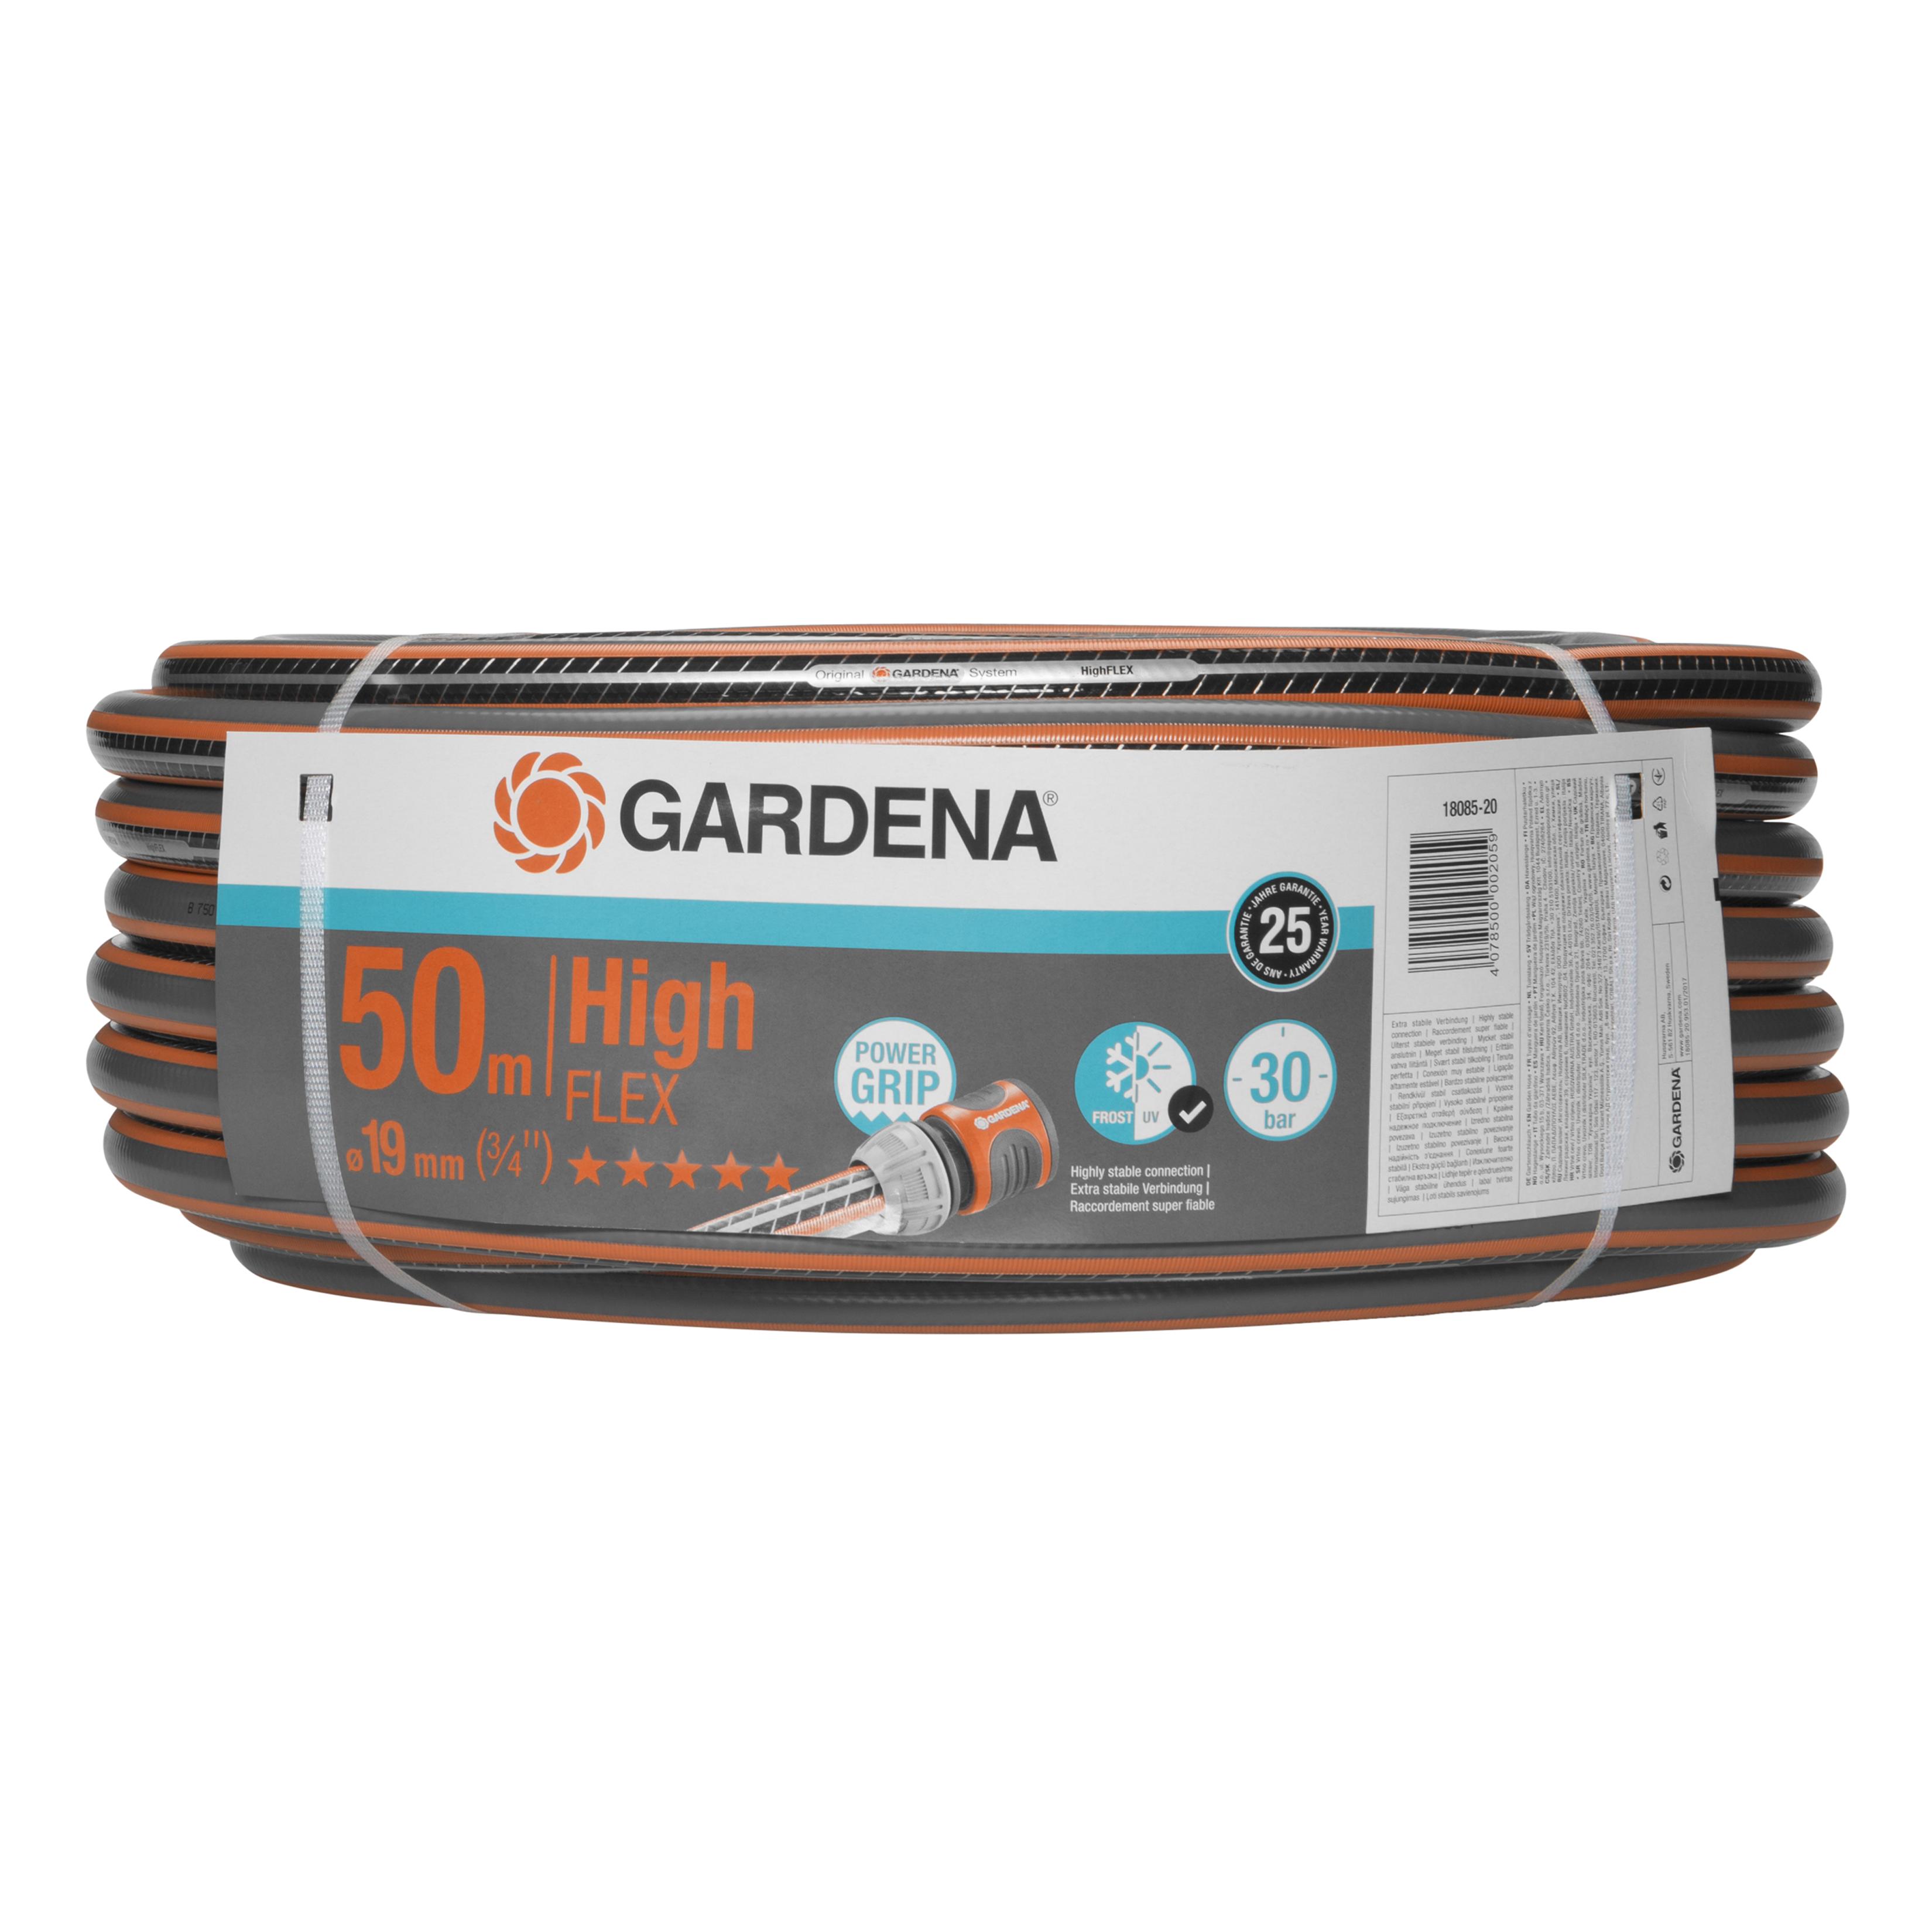 Gardena - Comfort HighFLEX Hose 19 mm 50m thumbnail-1